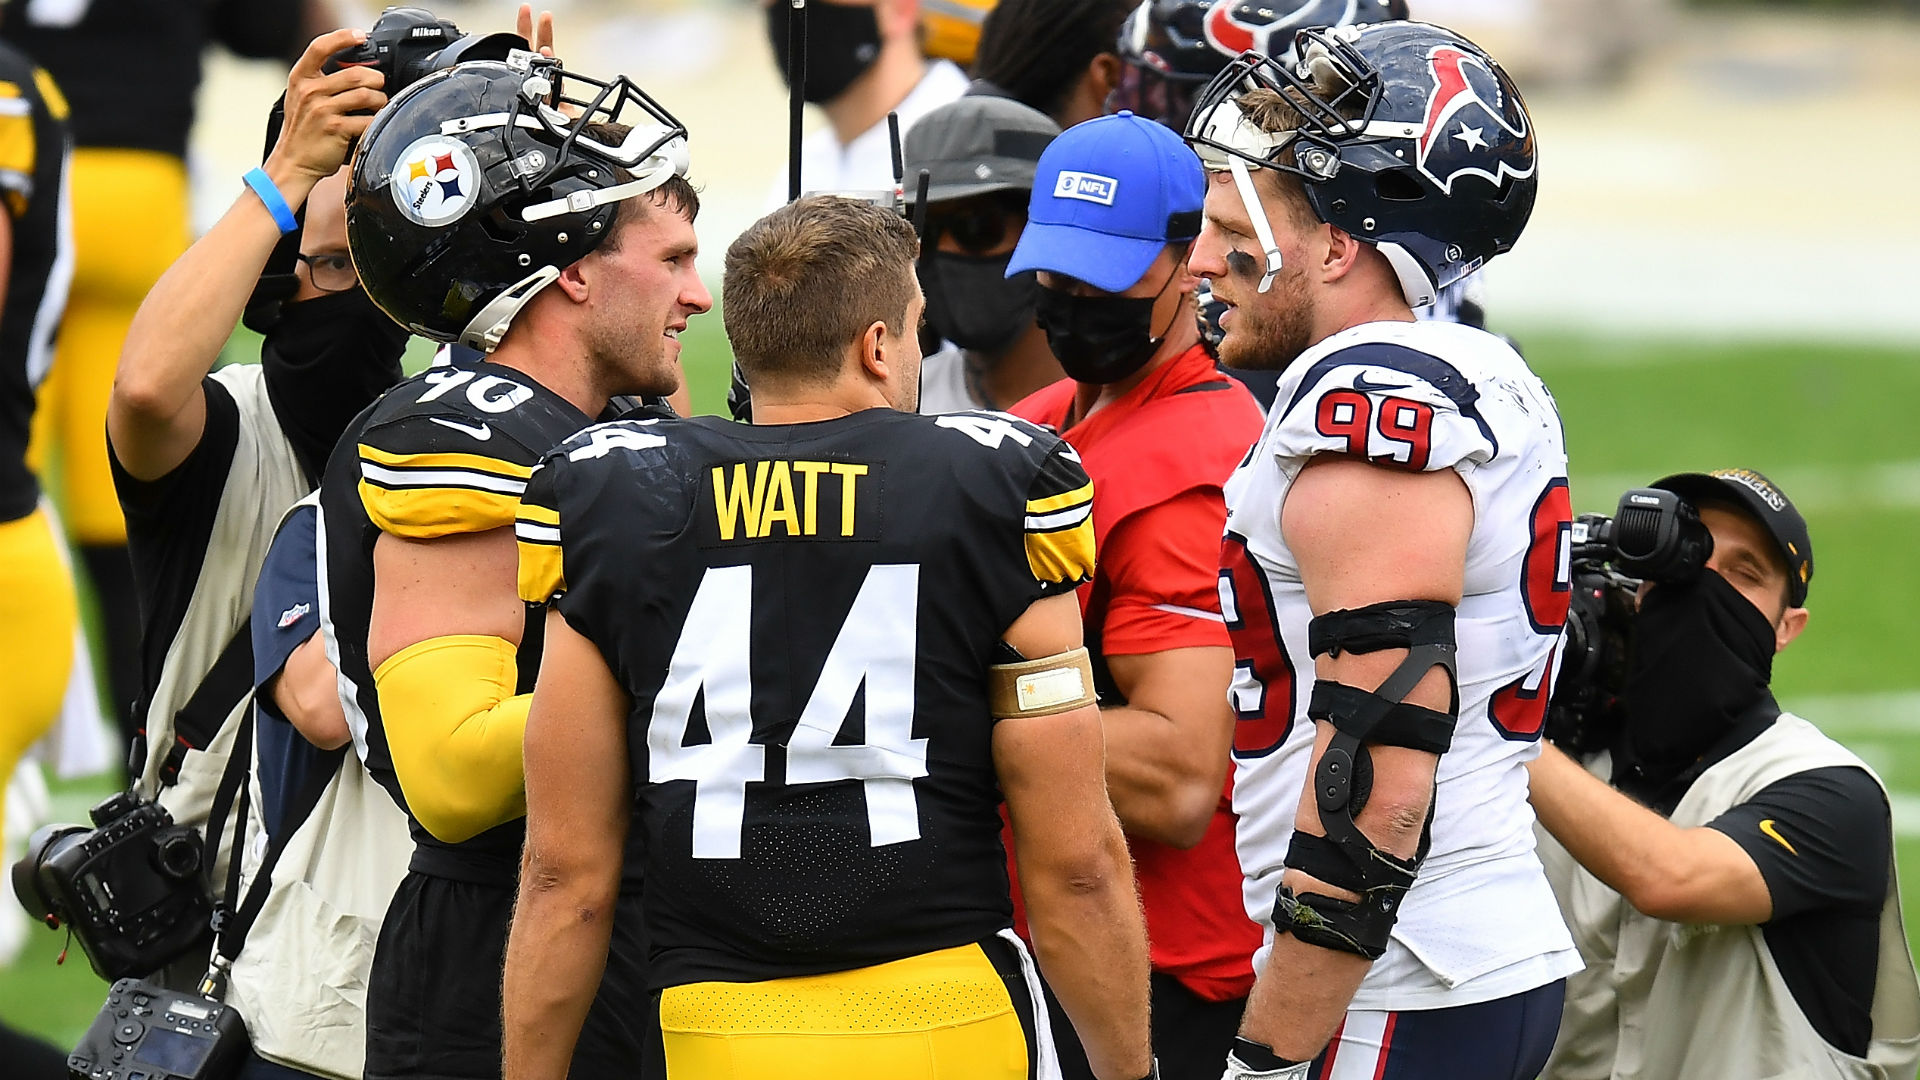 Meet J.J. Watt's brothers: T.J., Derek follow in family's NFL footsteps with Steelers